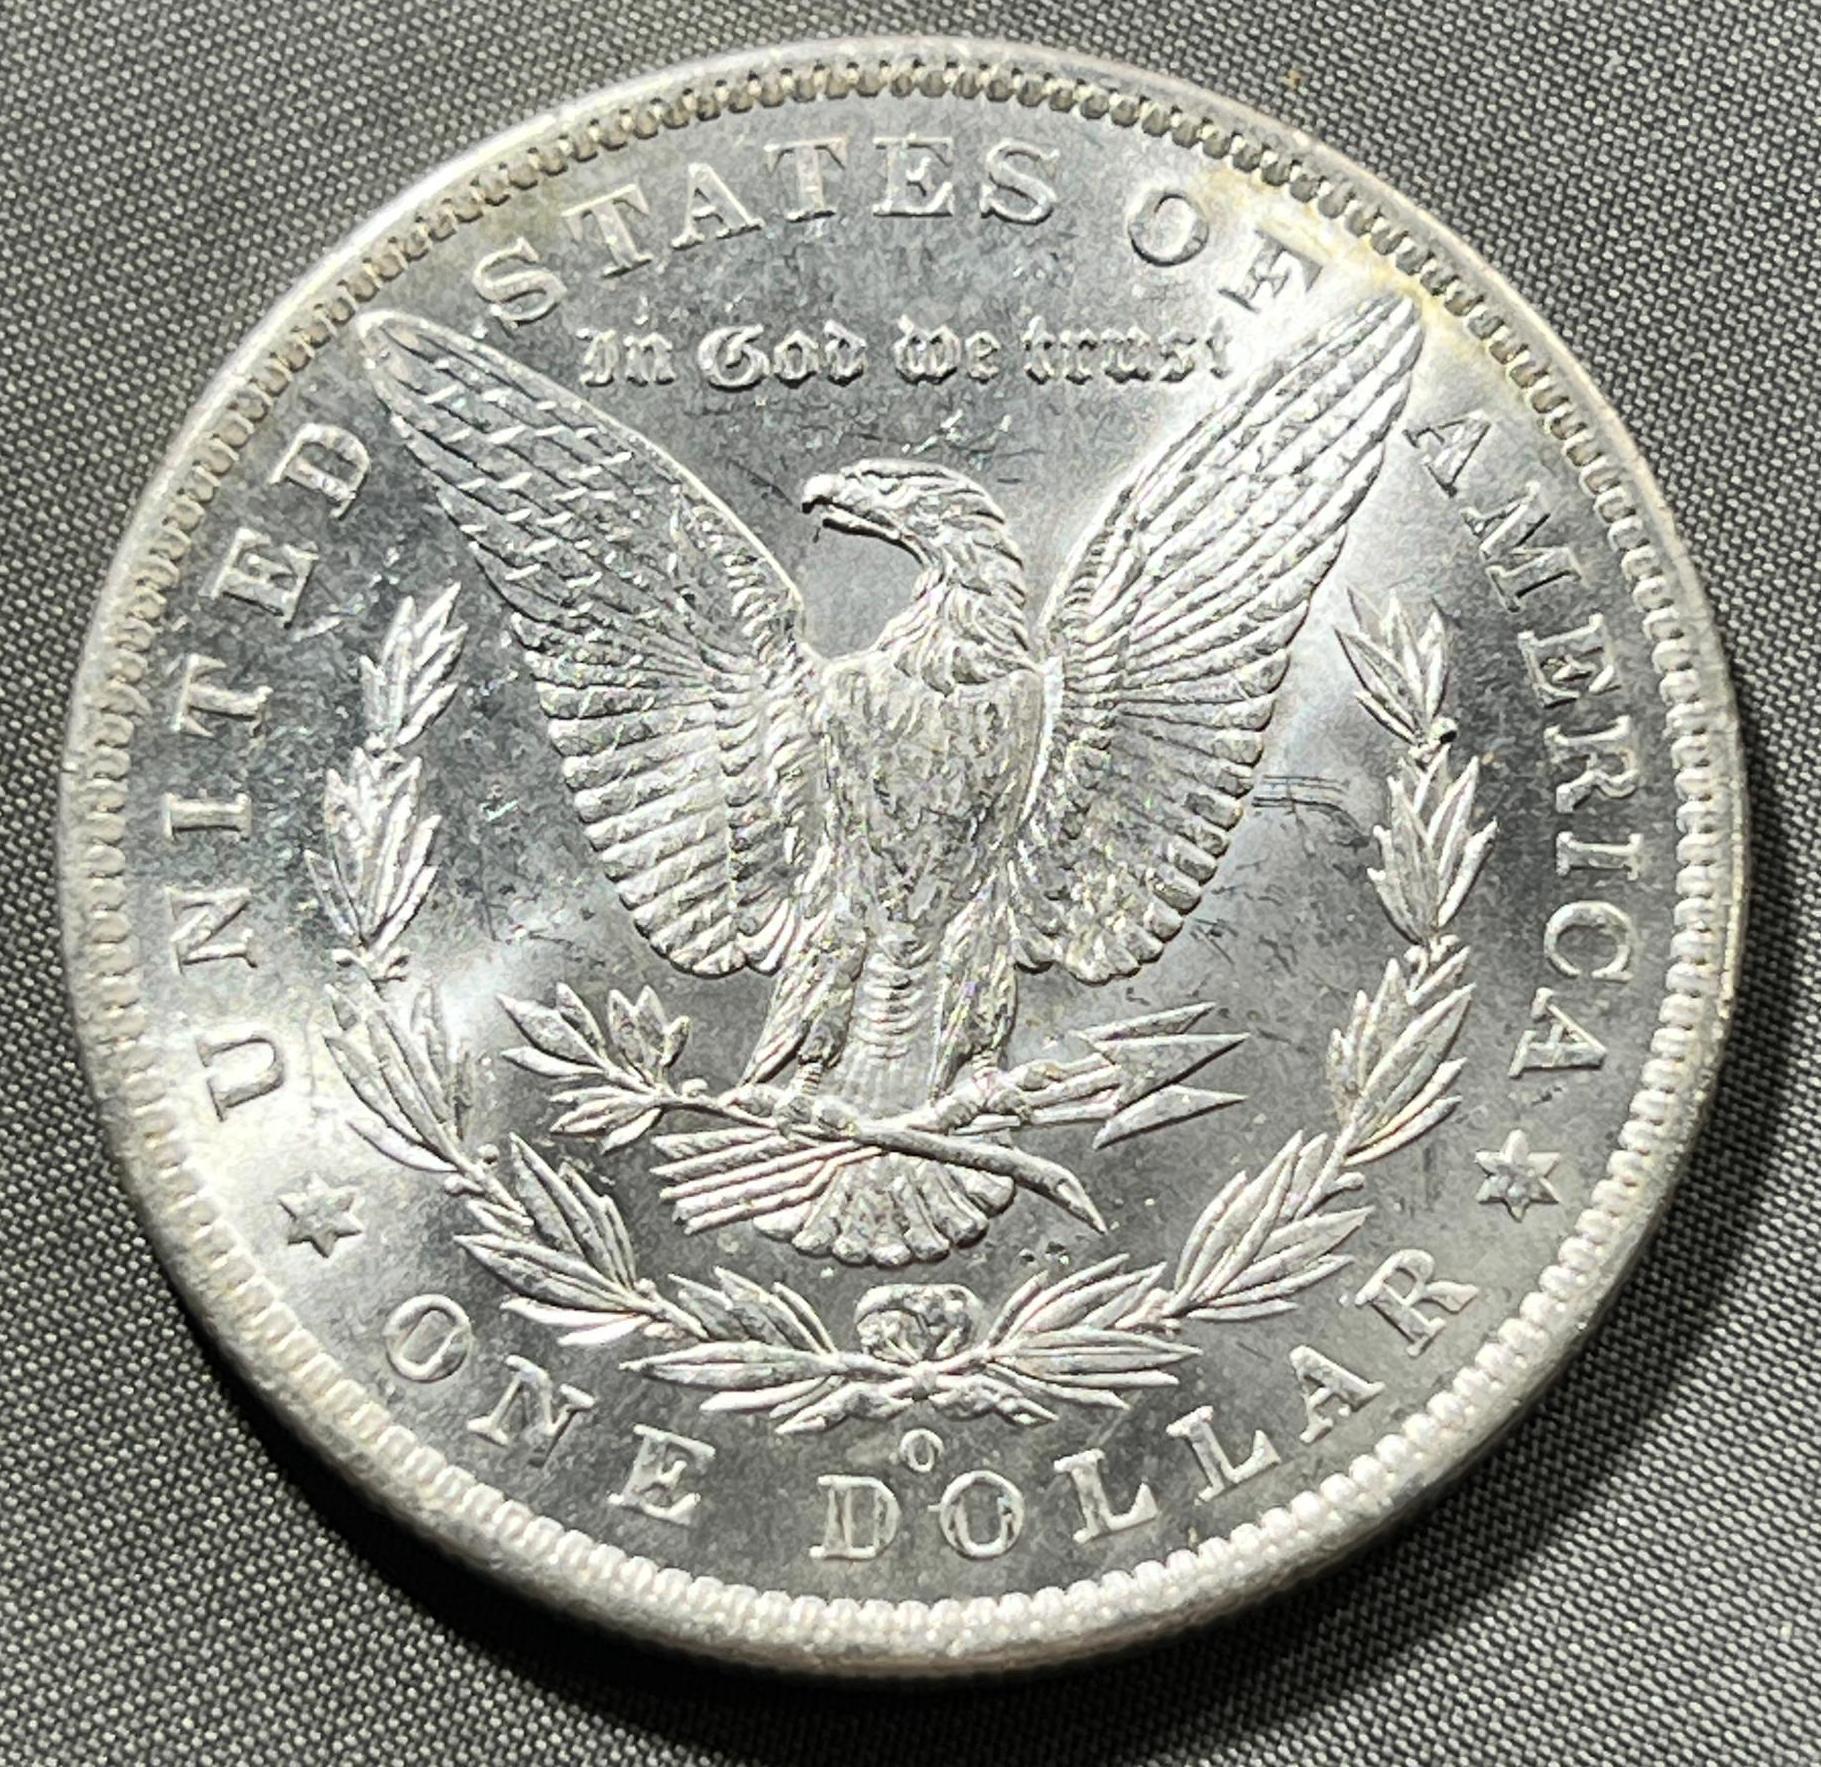 1885-O Morgan Silver Dollar, 90% Silver